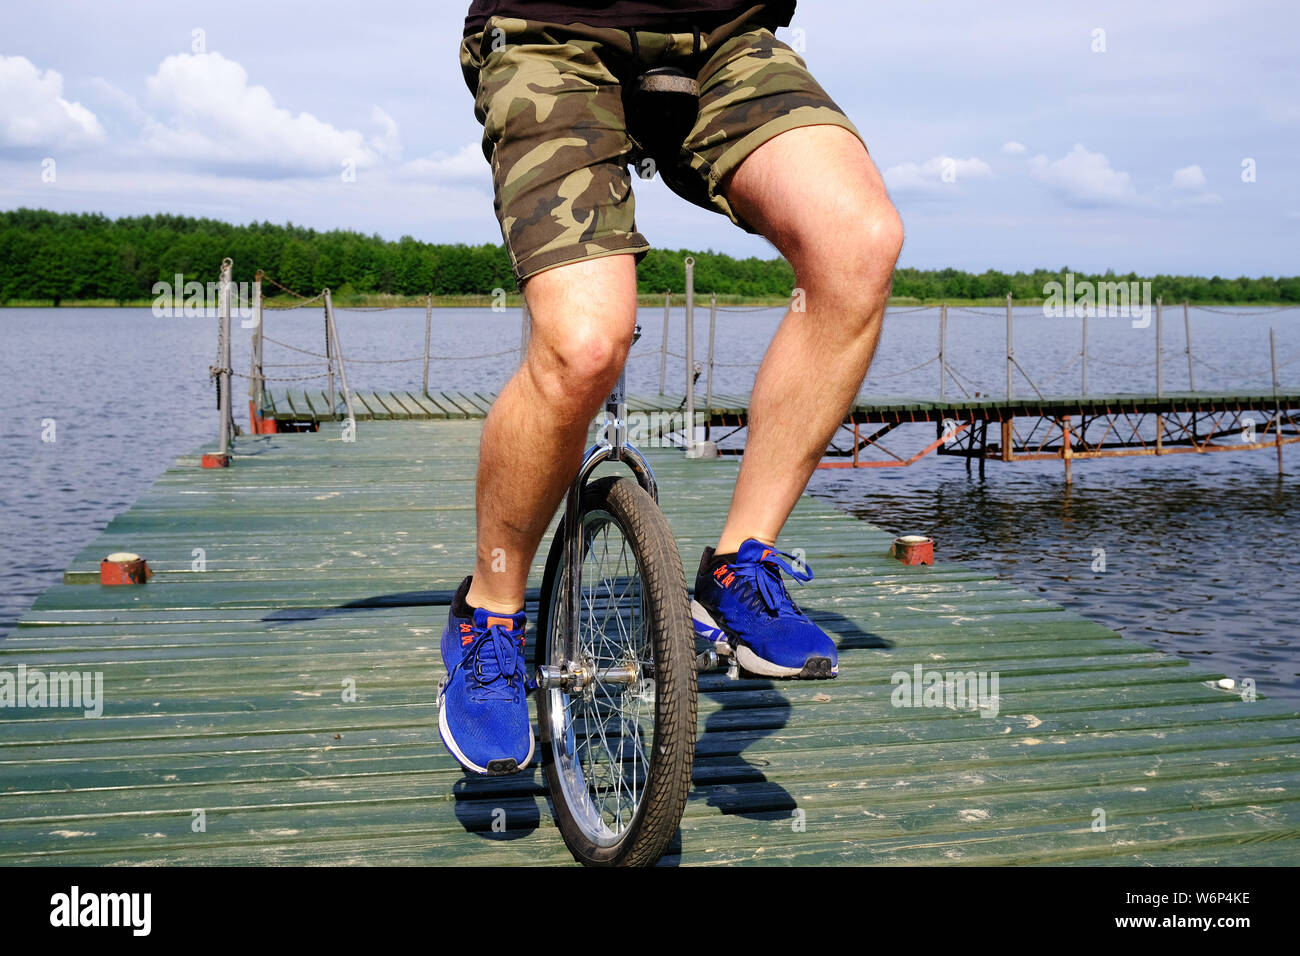 Jeune homme monté sur un unibike, une roue de vélo, sur une jetée à un lac de Polan Banque D'Images